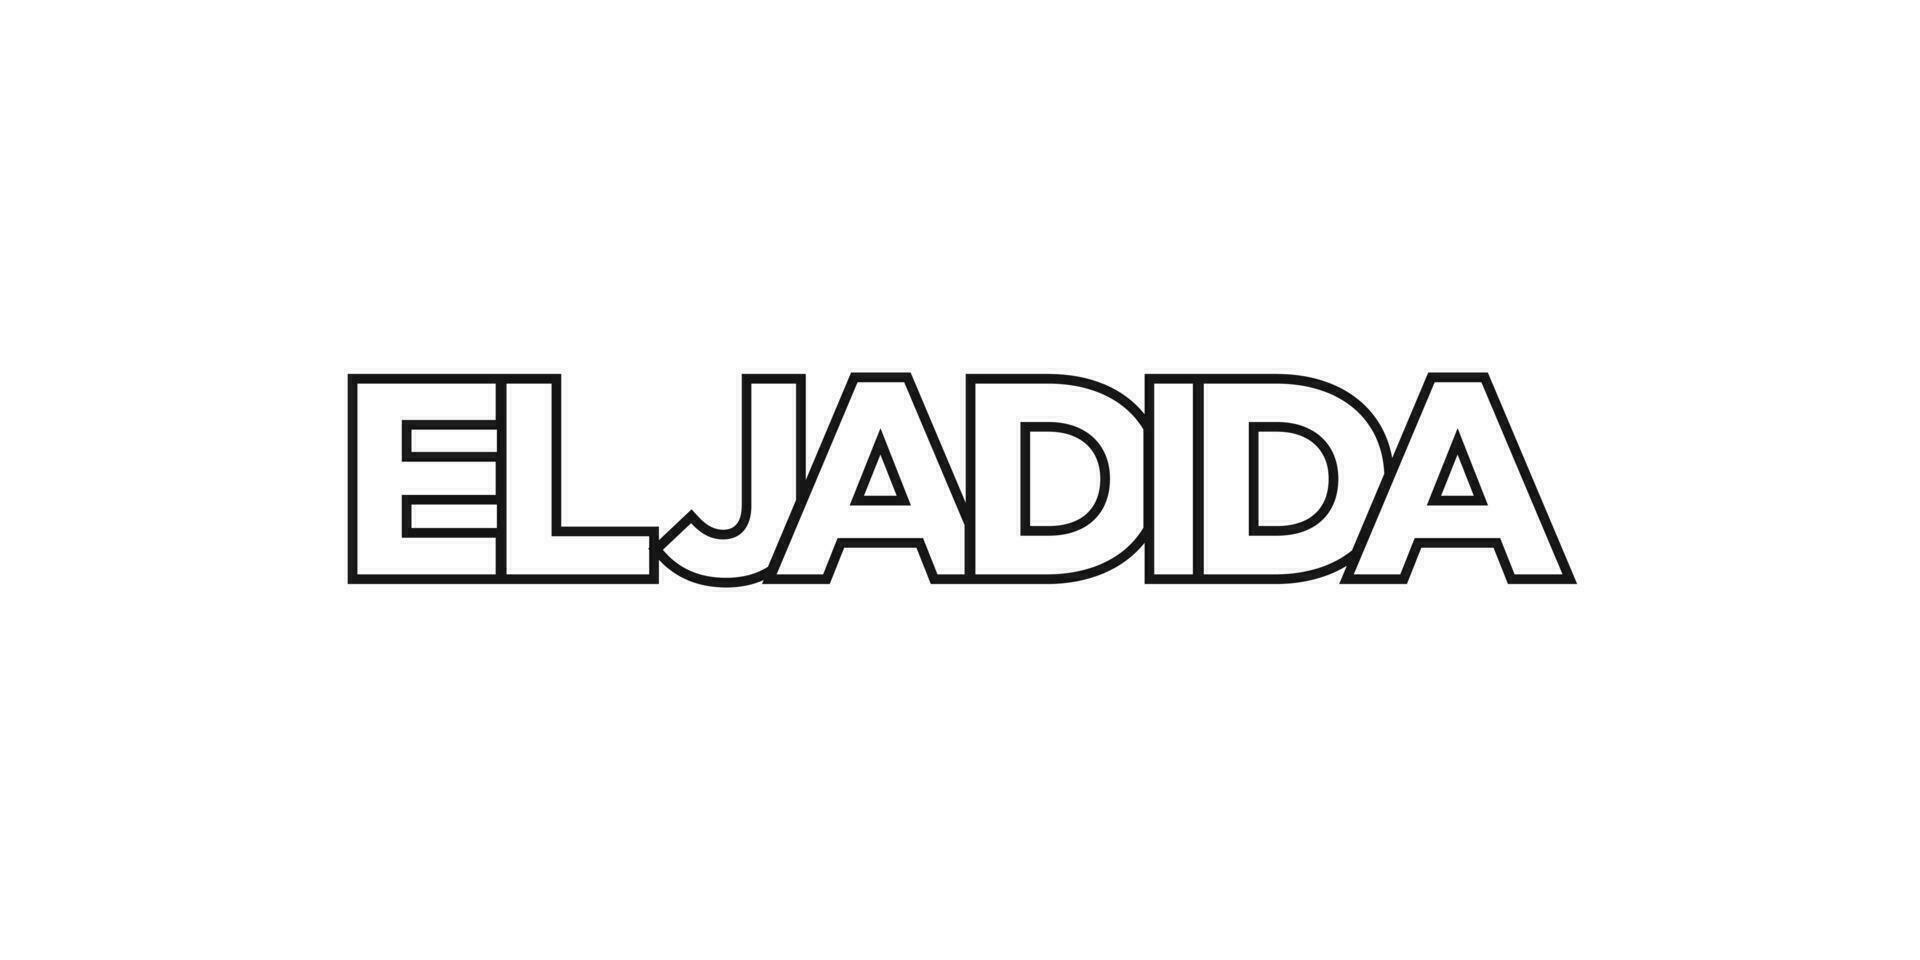 el jadida in de Marokko embleem. de ontwerp Kenmerken een meetkundig stijl, vector illustratie met stoutmoedig typografie in een modern lettertype. de grafisch leuze belettering.